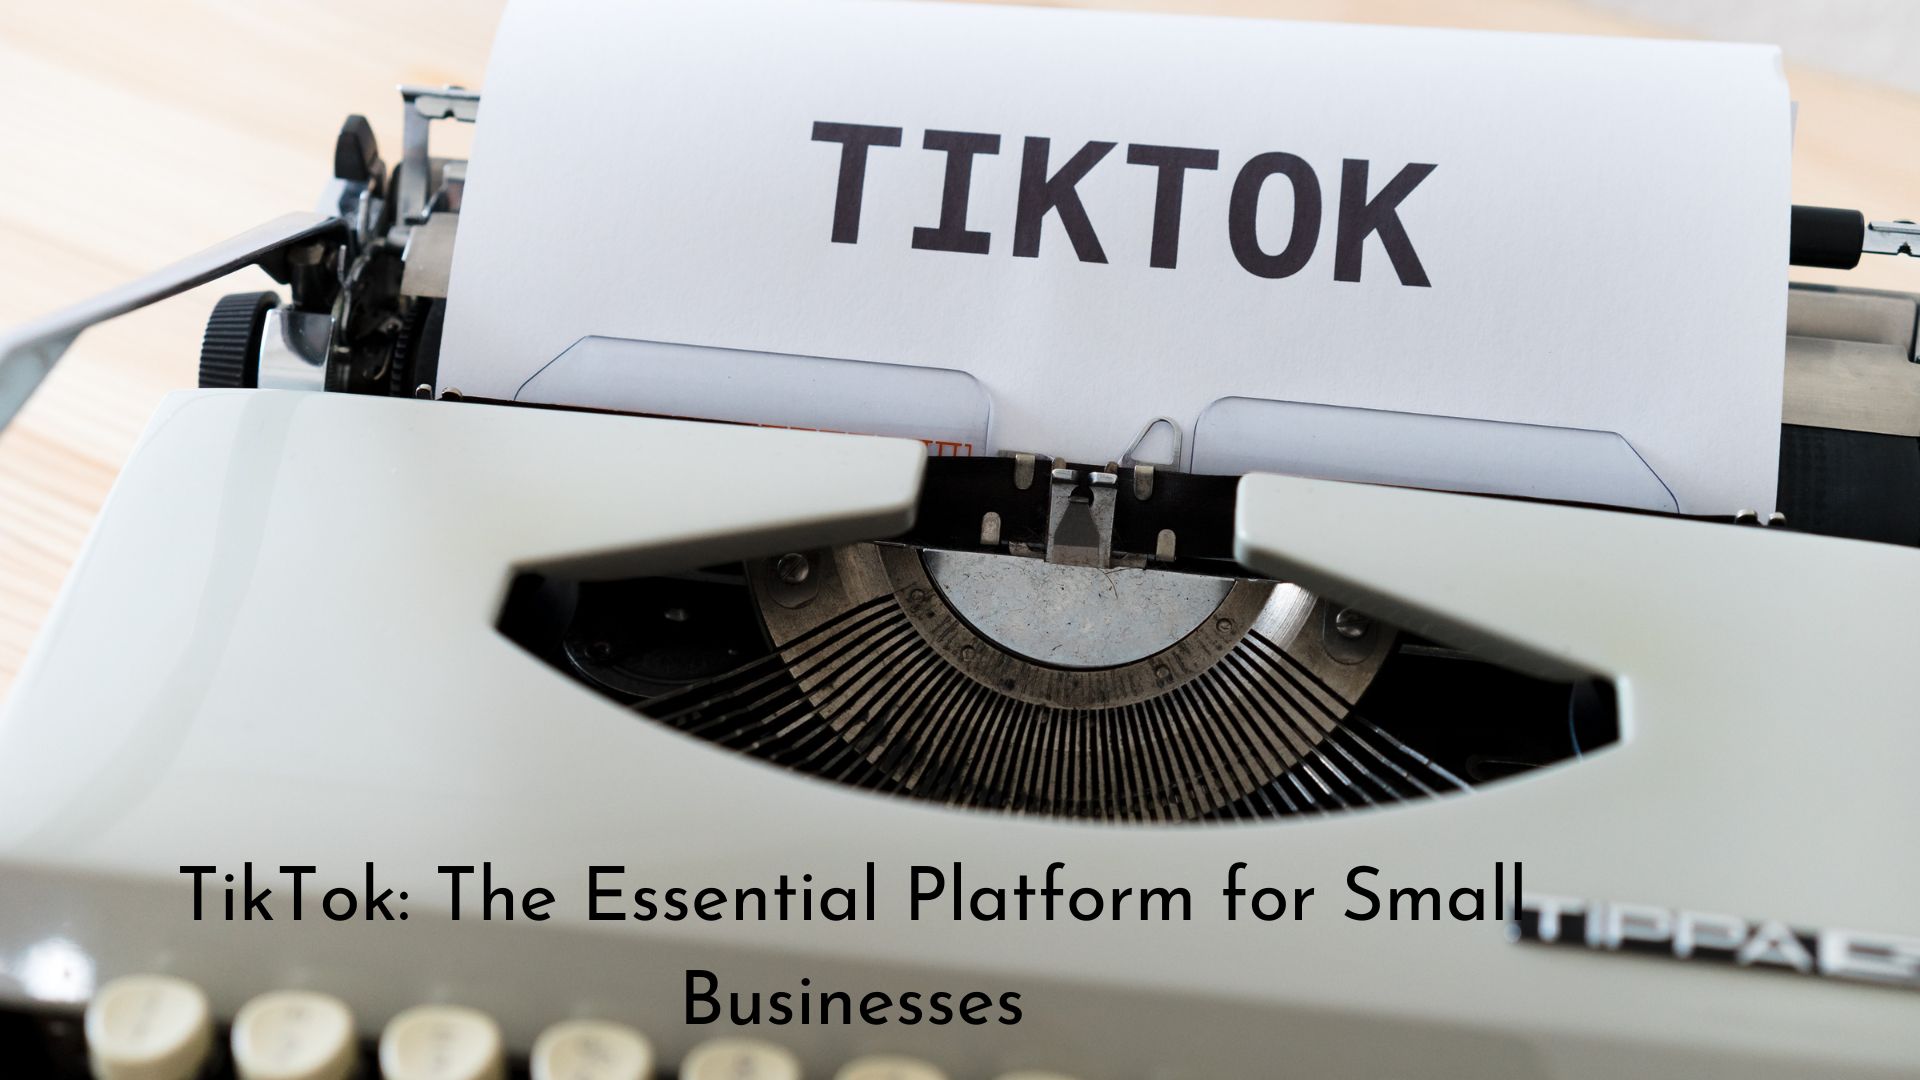 TikTok: The Essential Platform for Small Businesses